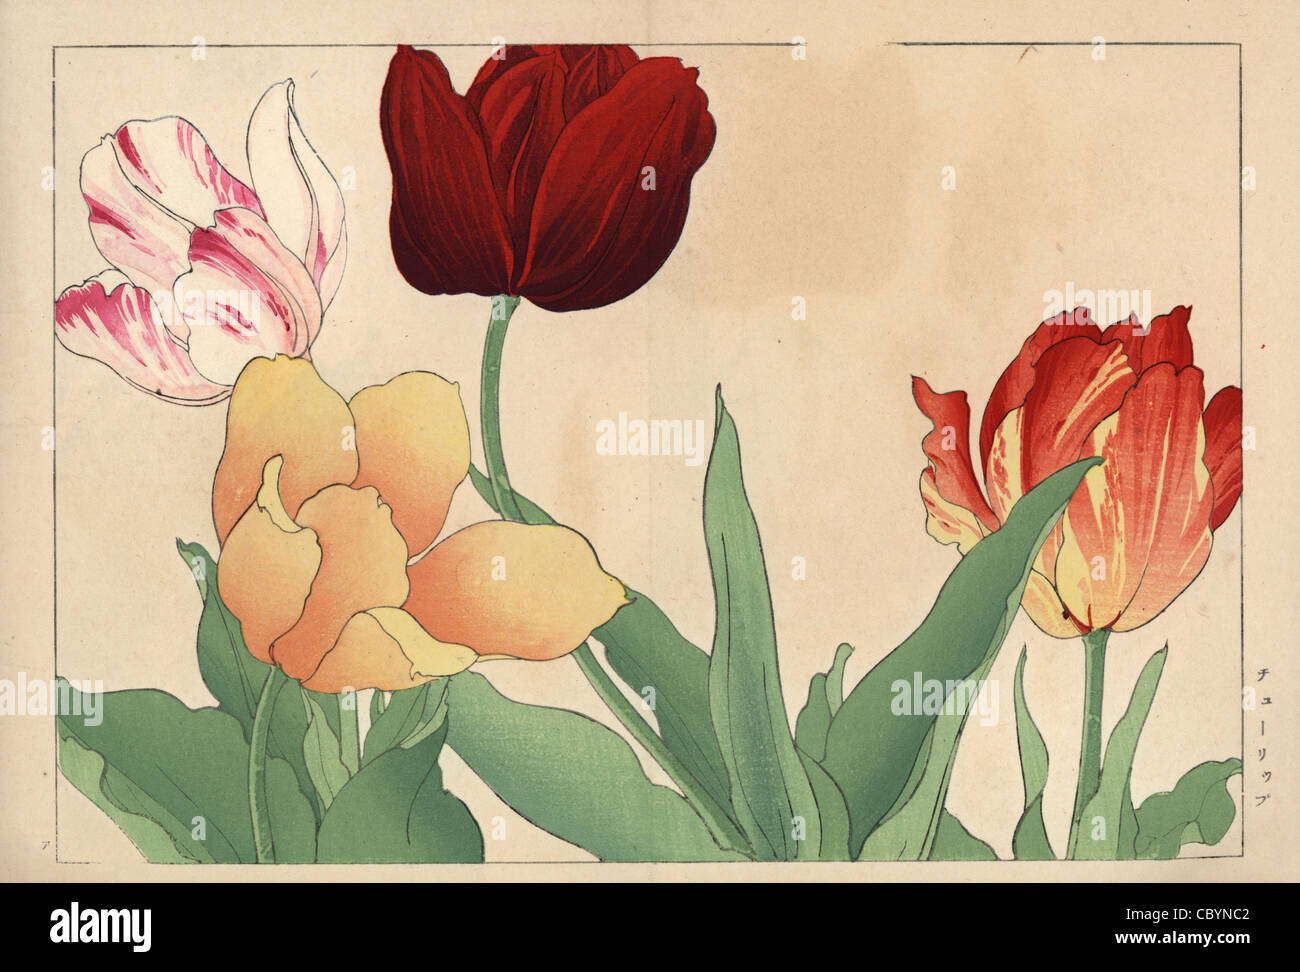 Tulips, Tulipa gesneriana varieties. Stock Photo